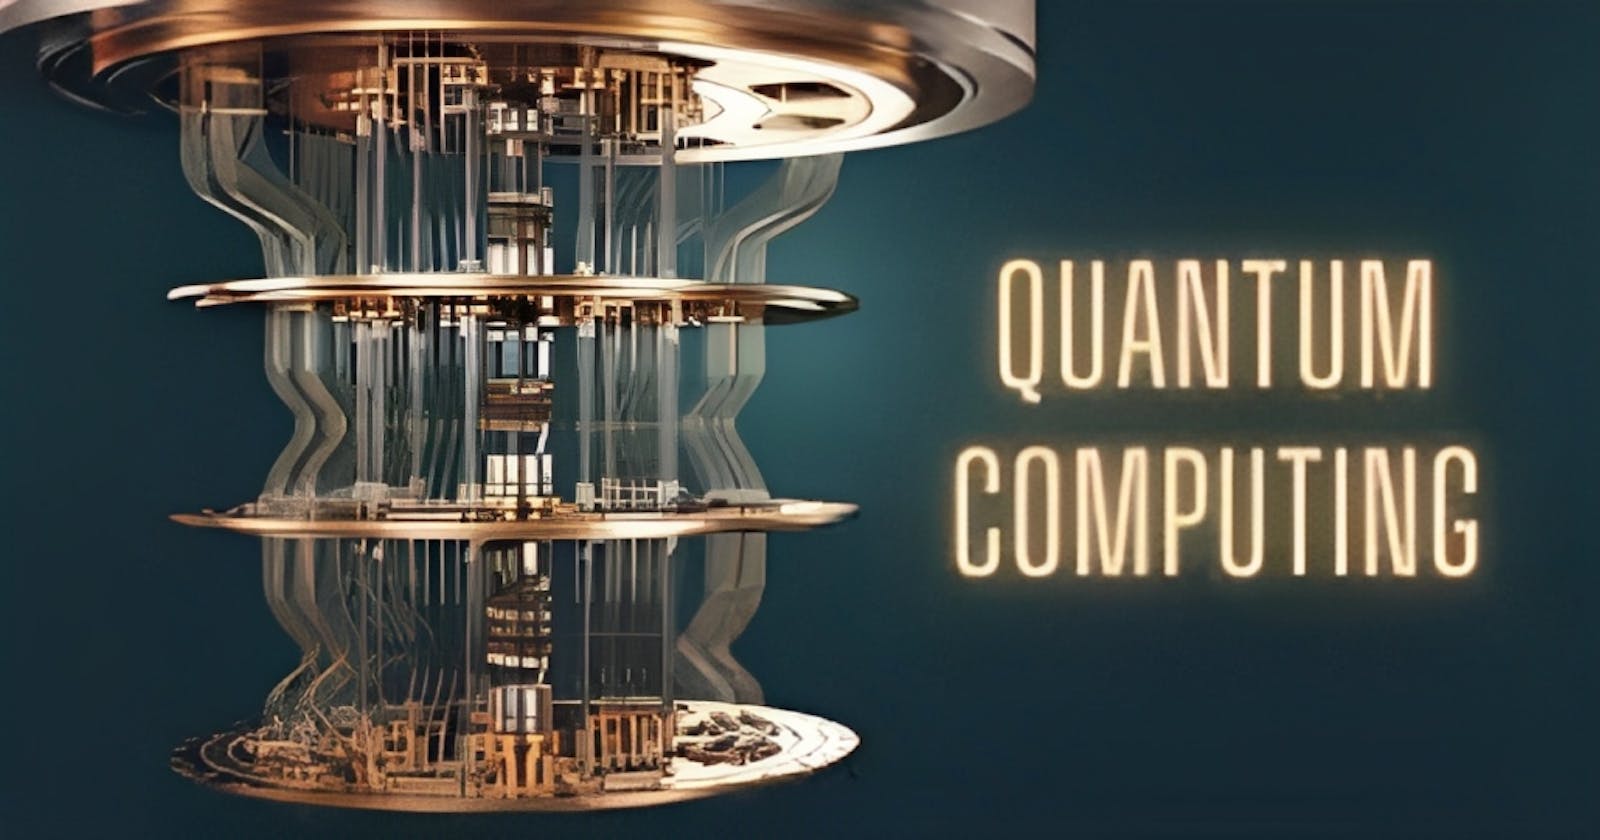 [Episode 0]: Introduction to Quantum Computing